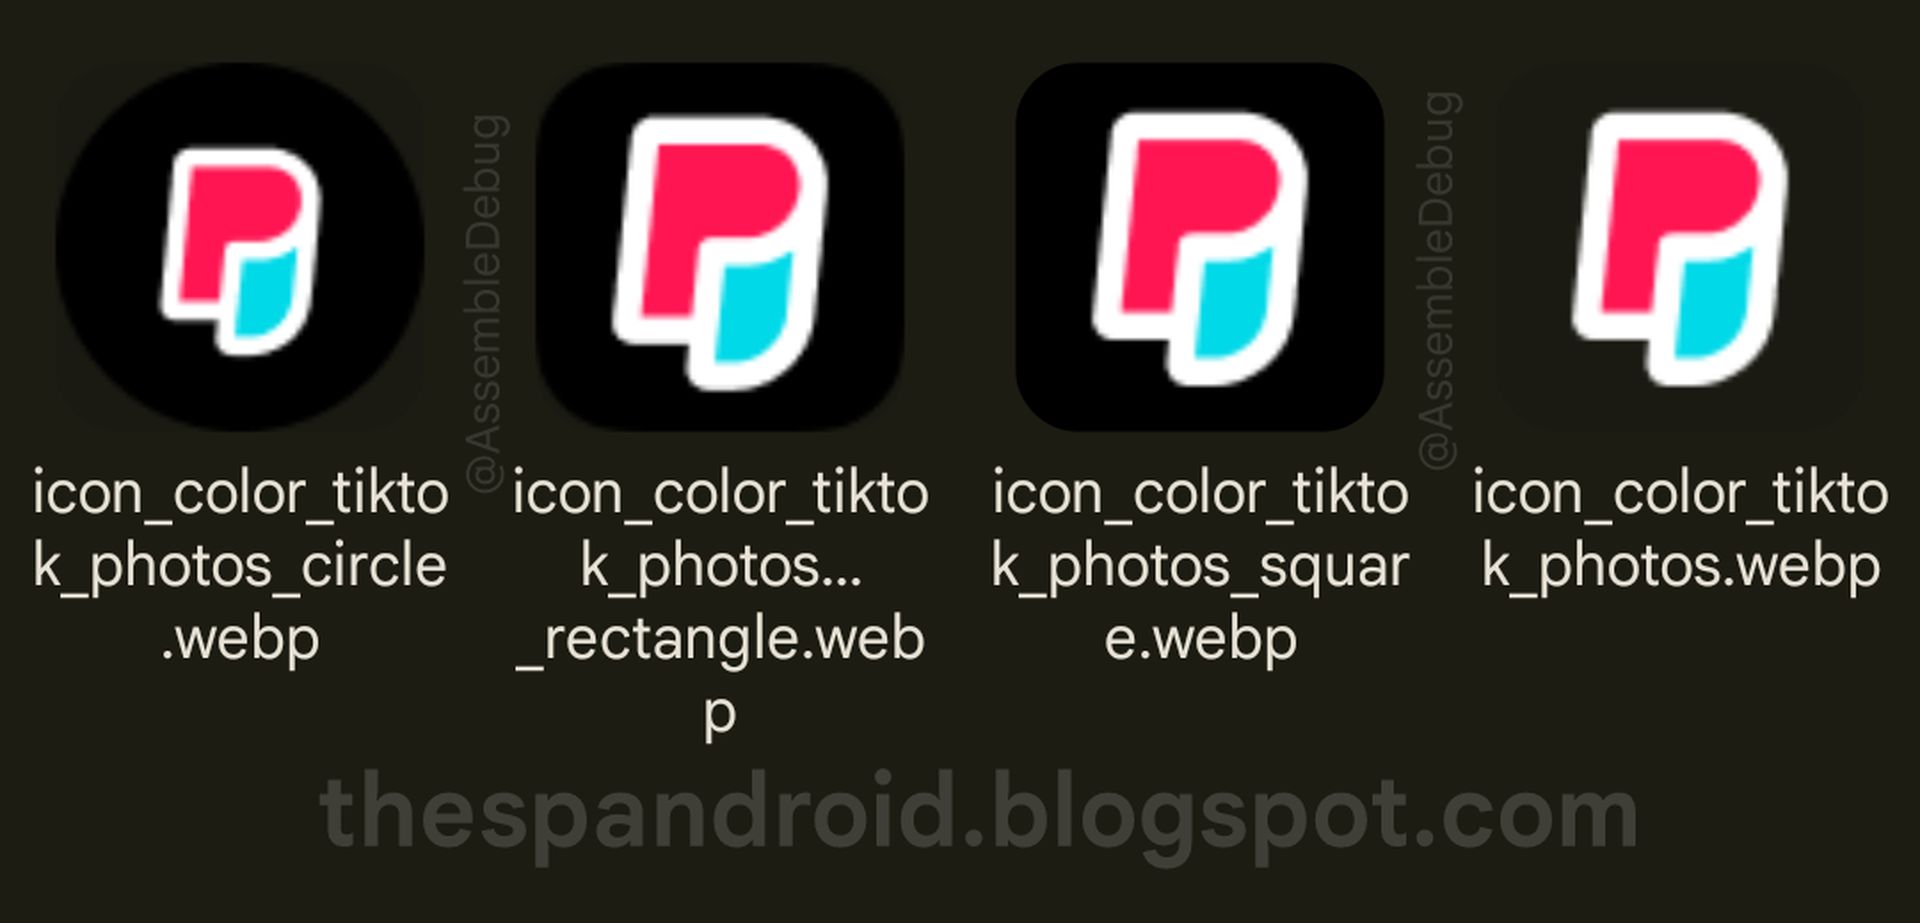 De broncode van de TikTok Photos-app is gelekt